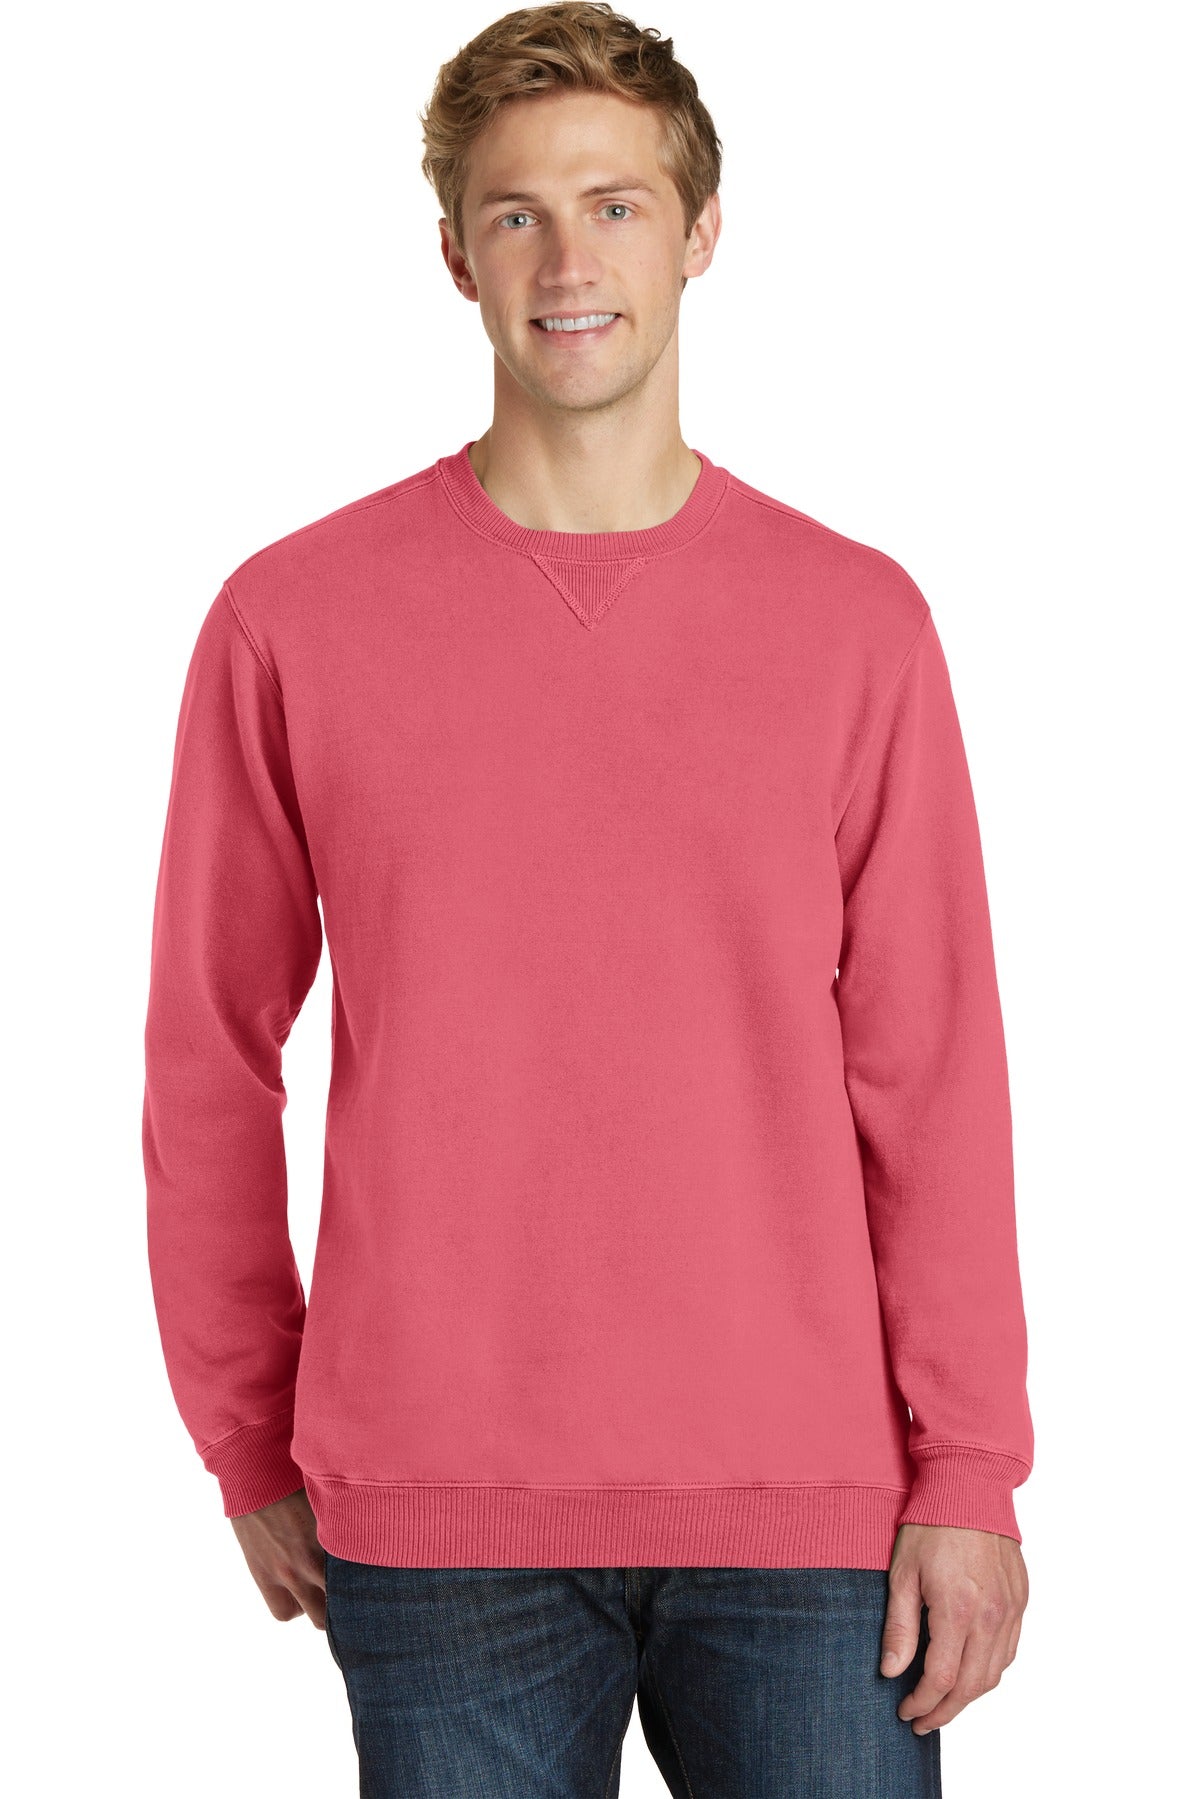 Sweatshirts/Fleece Fruit Punch Port & Company